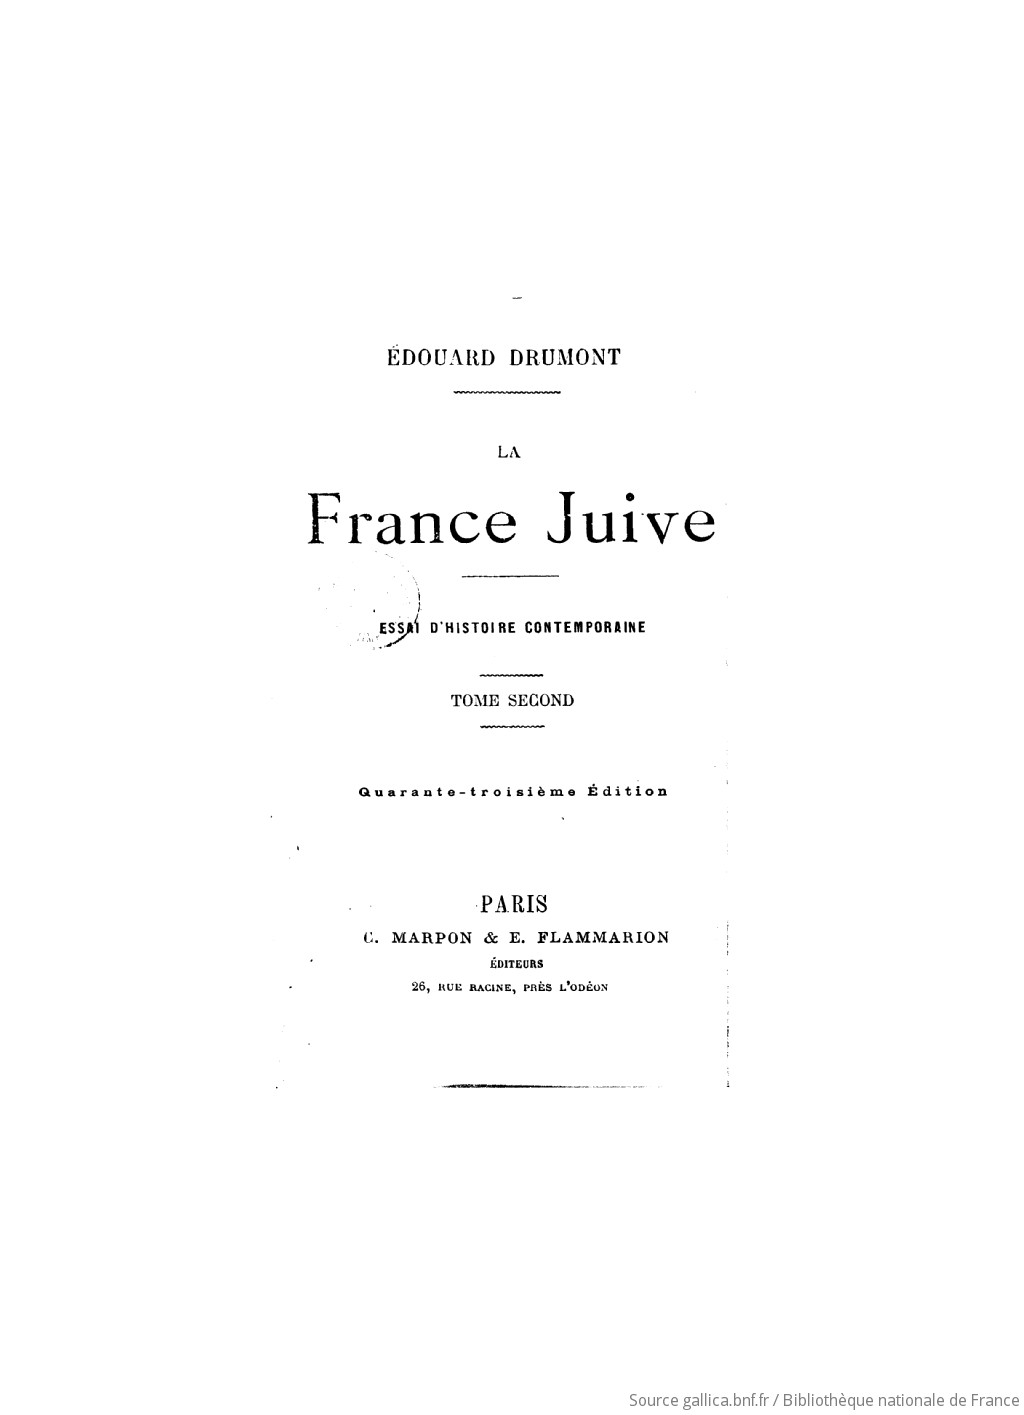 La France juive : essai d'histoire contemporaine. 2 / Edouard Drumont